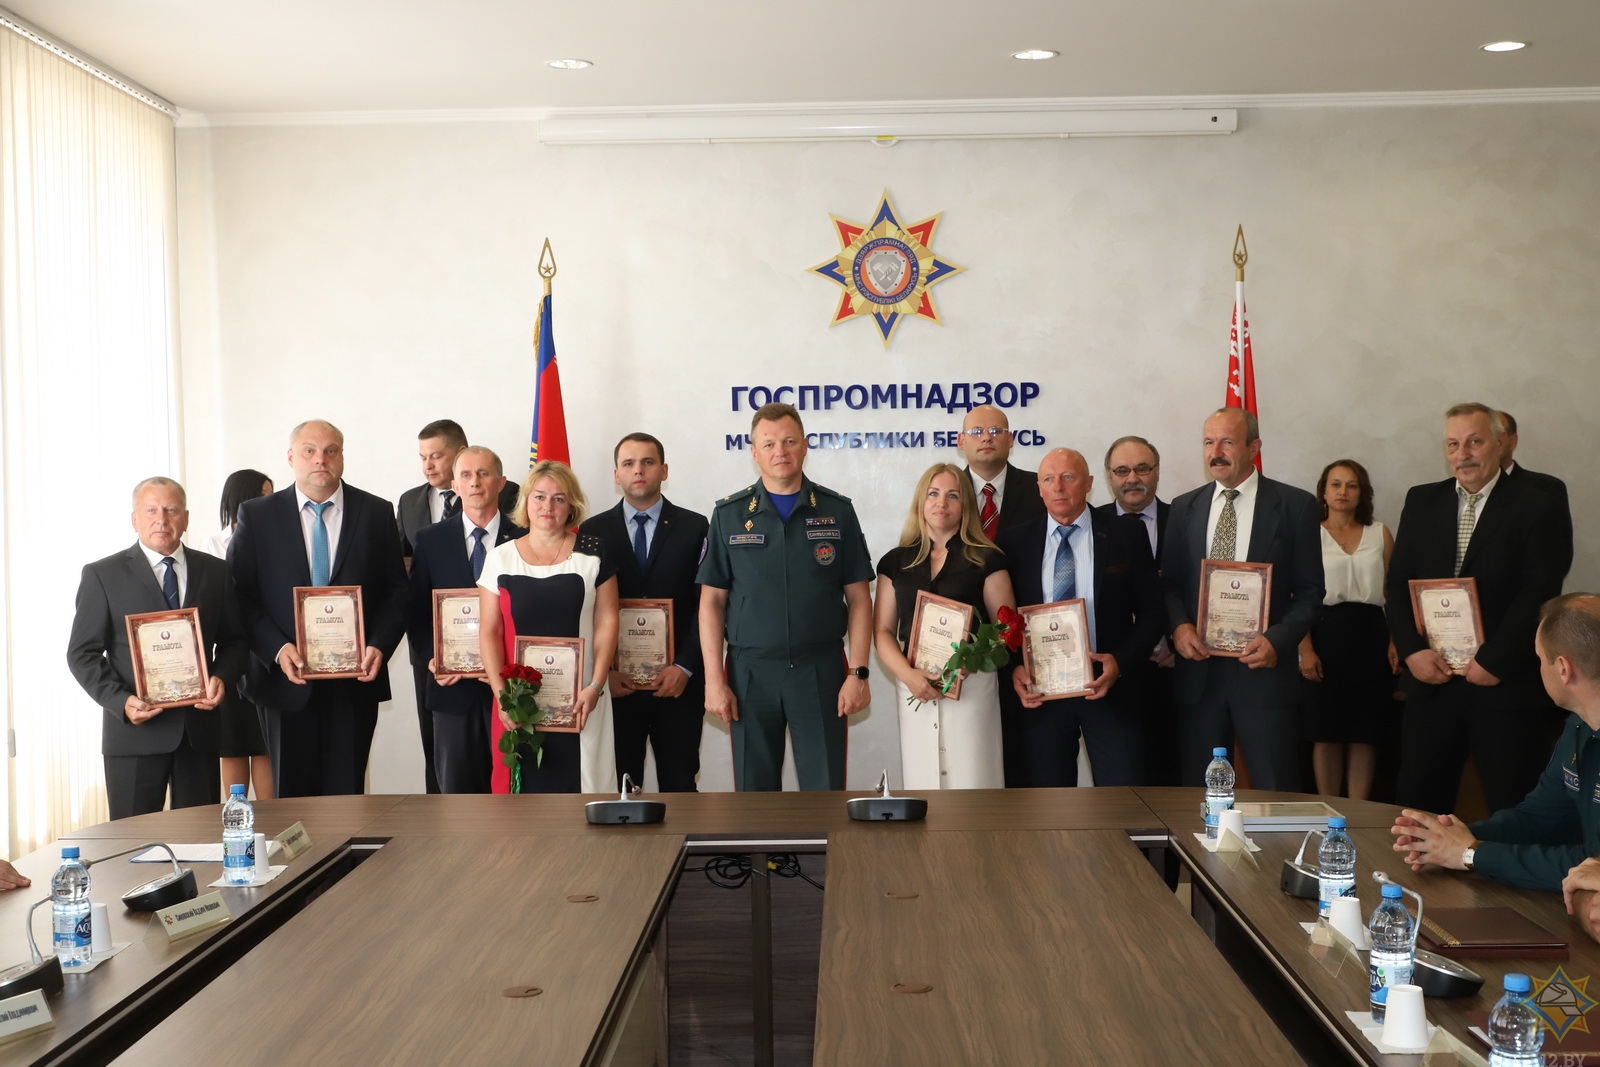 Министр поздравил Госпромнадзор с 65-летием